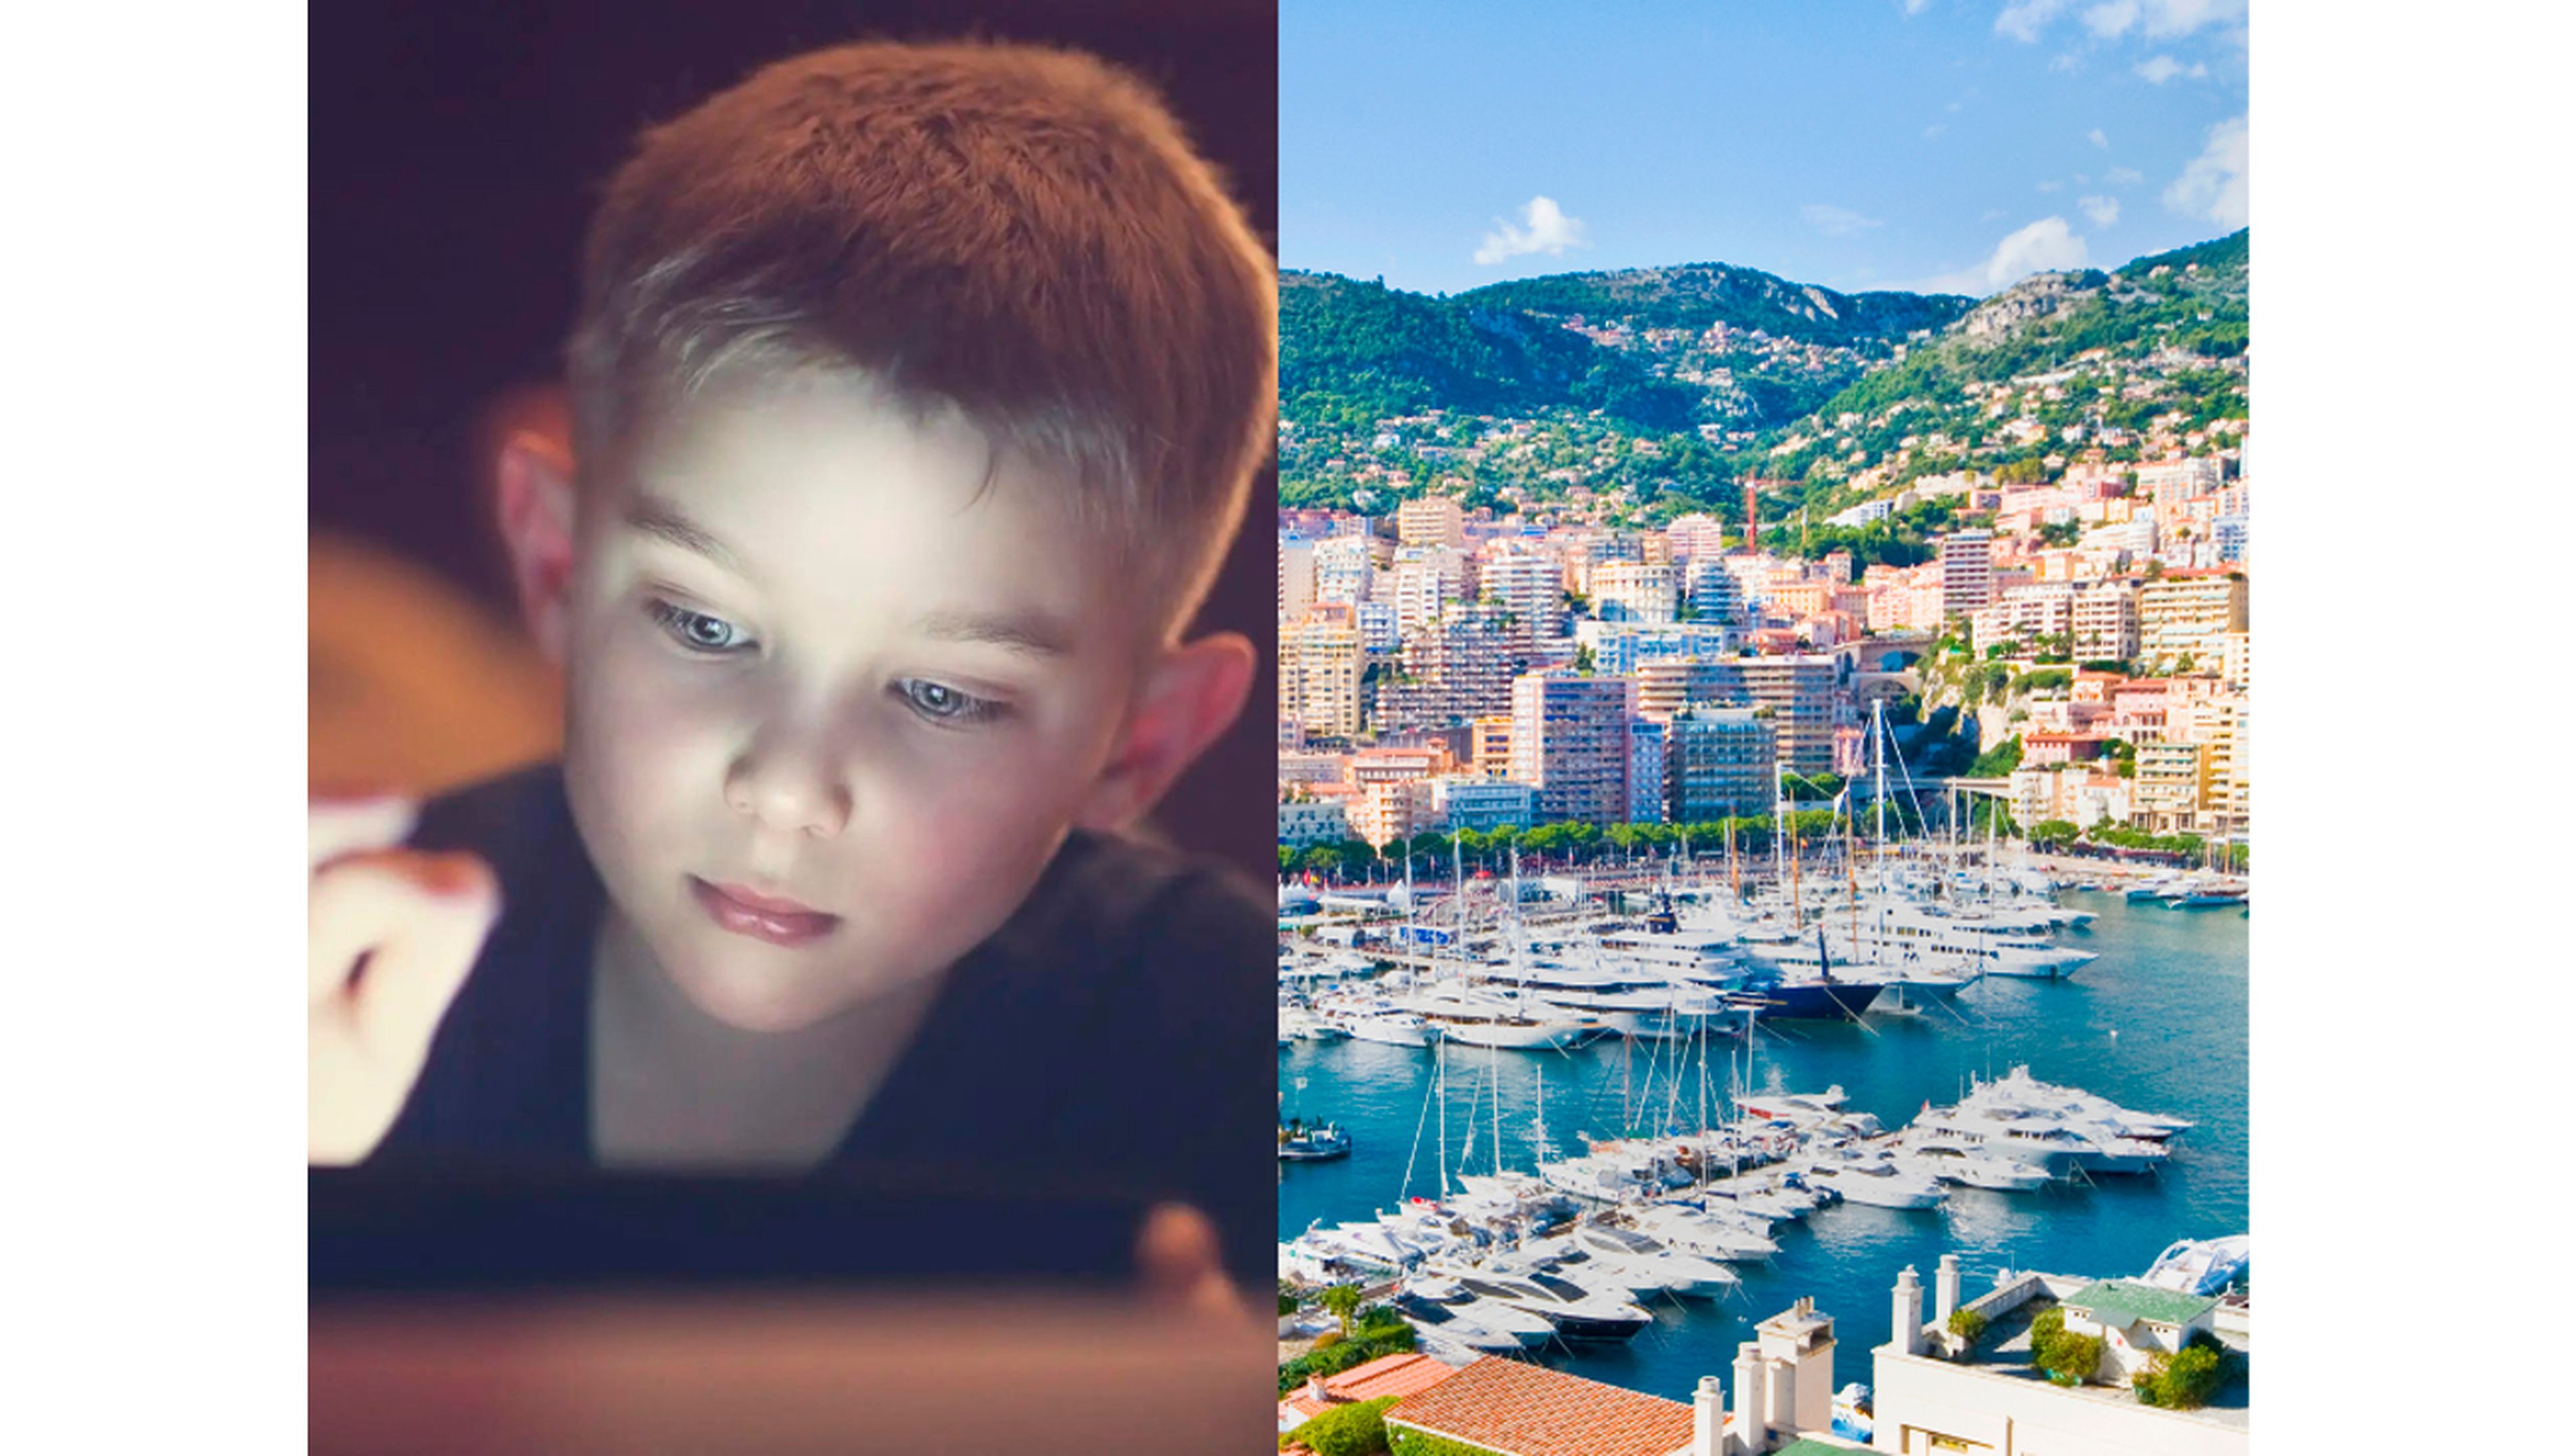 Imagen de archivo de un niño con una tablet (no uno de los estudiantes rusos) y el Puerto de Mónaco.